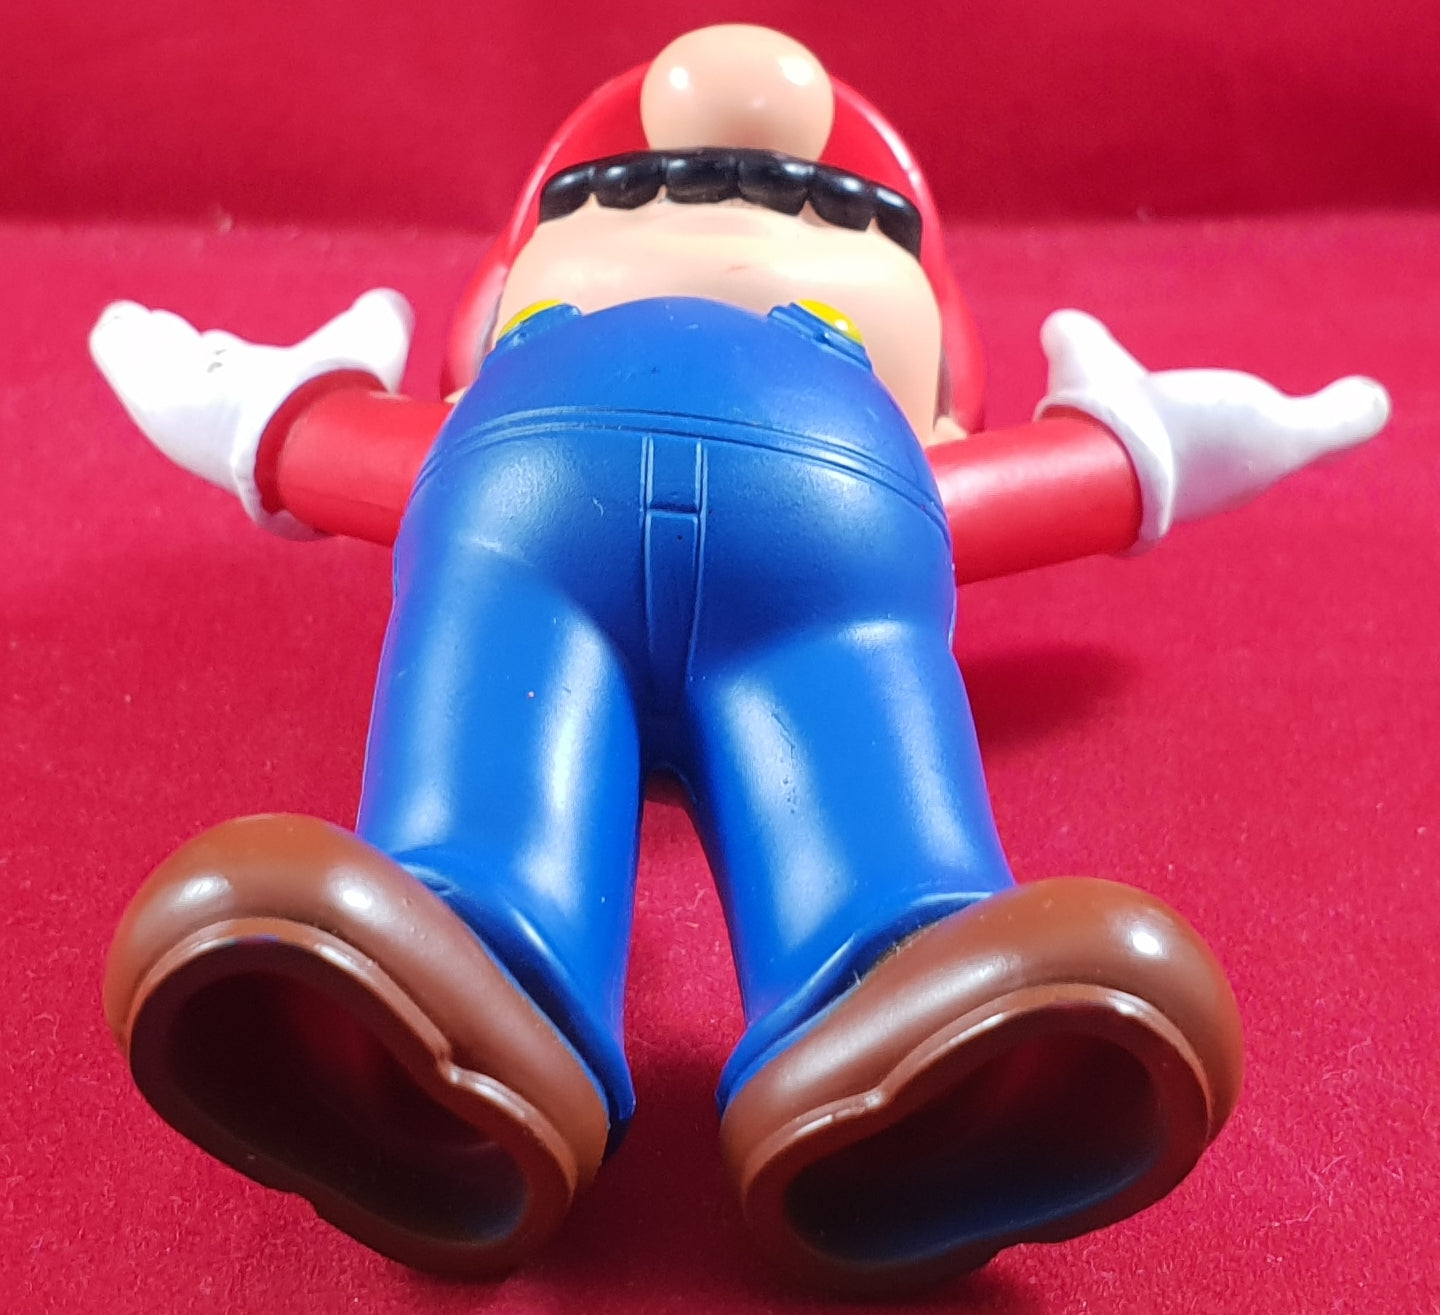 Super Mario Toy Figurine Accessory